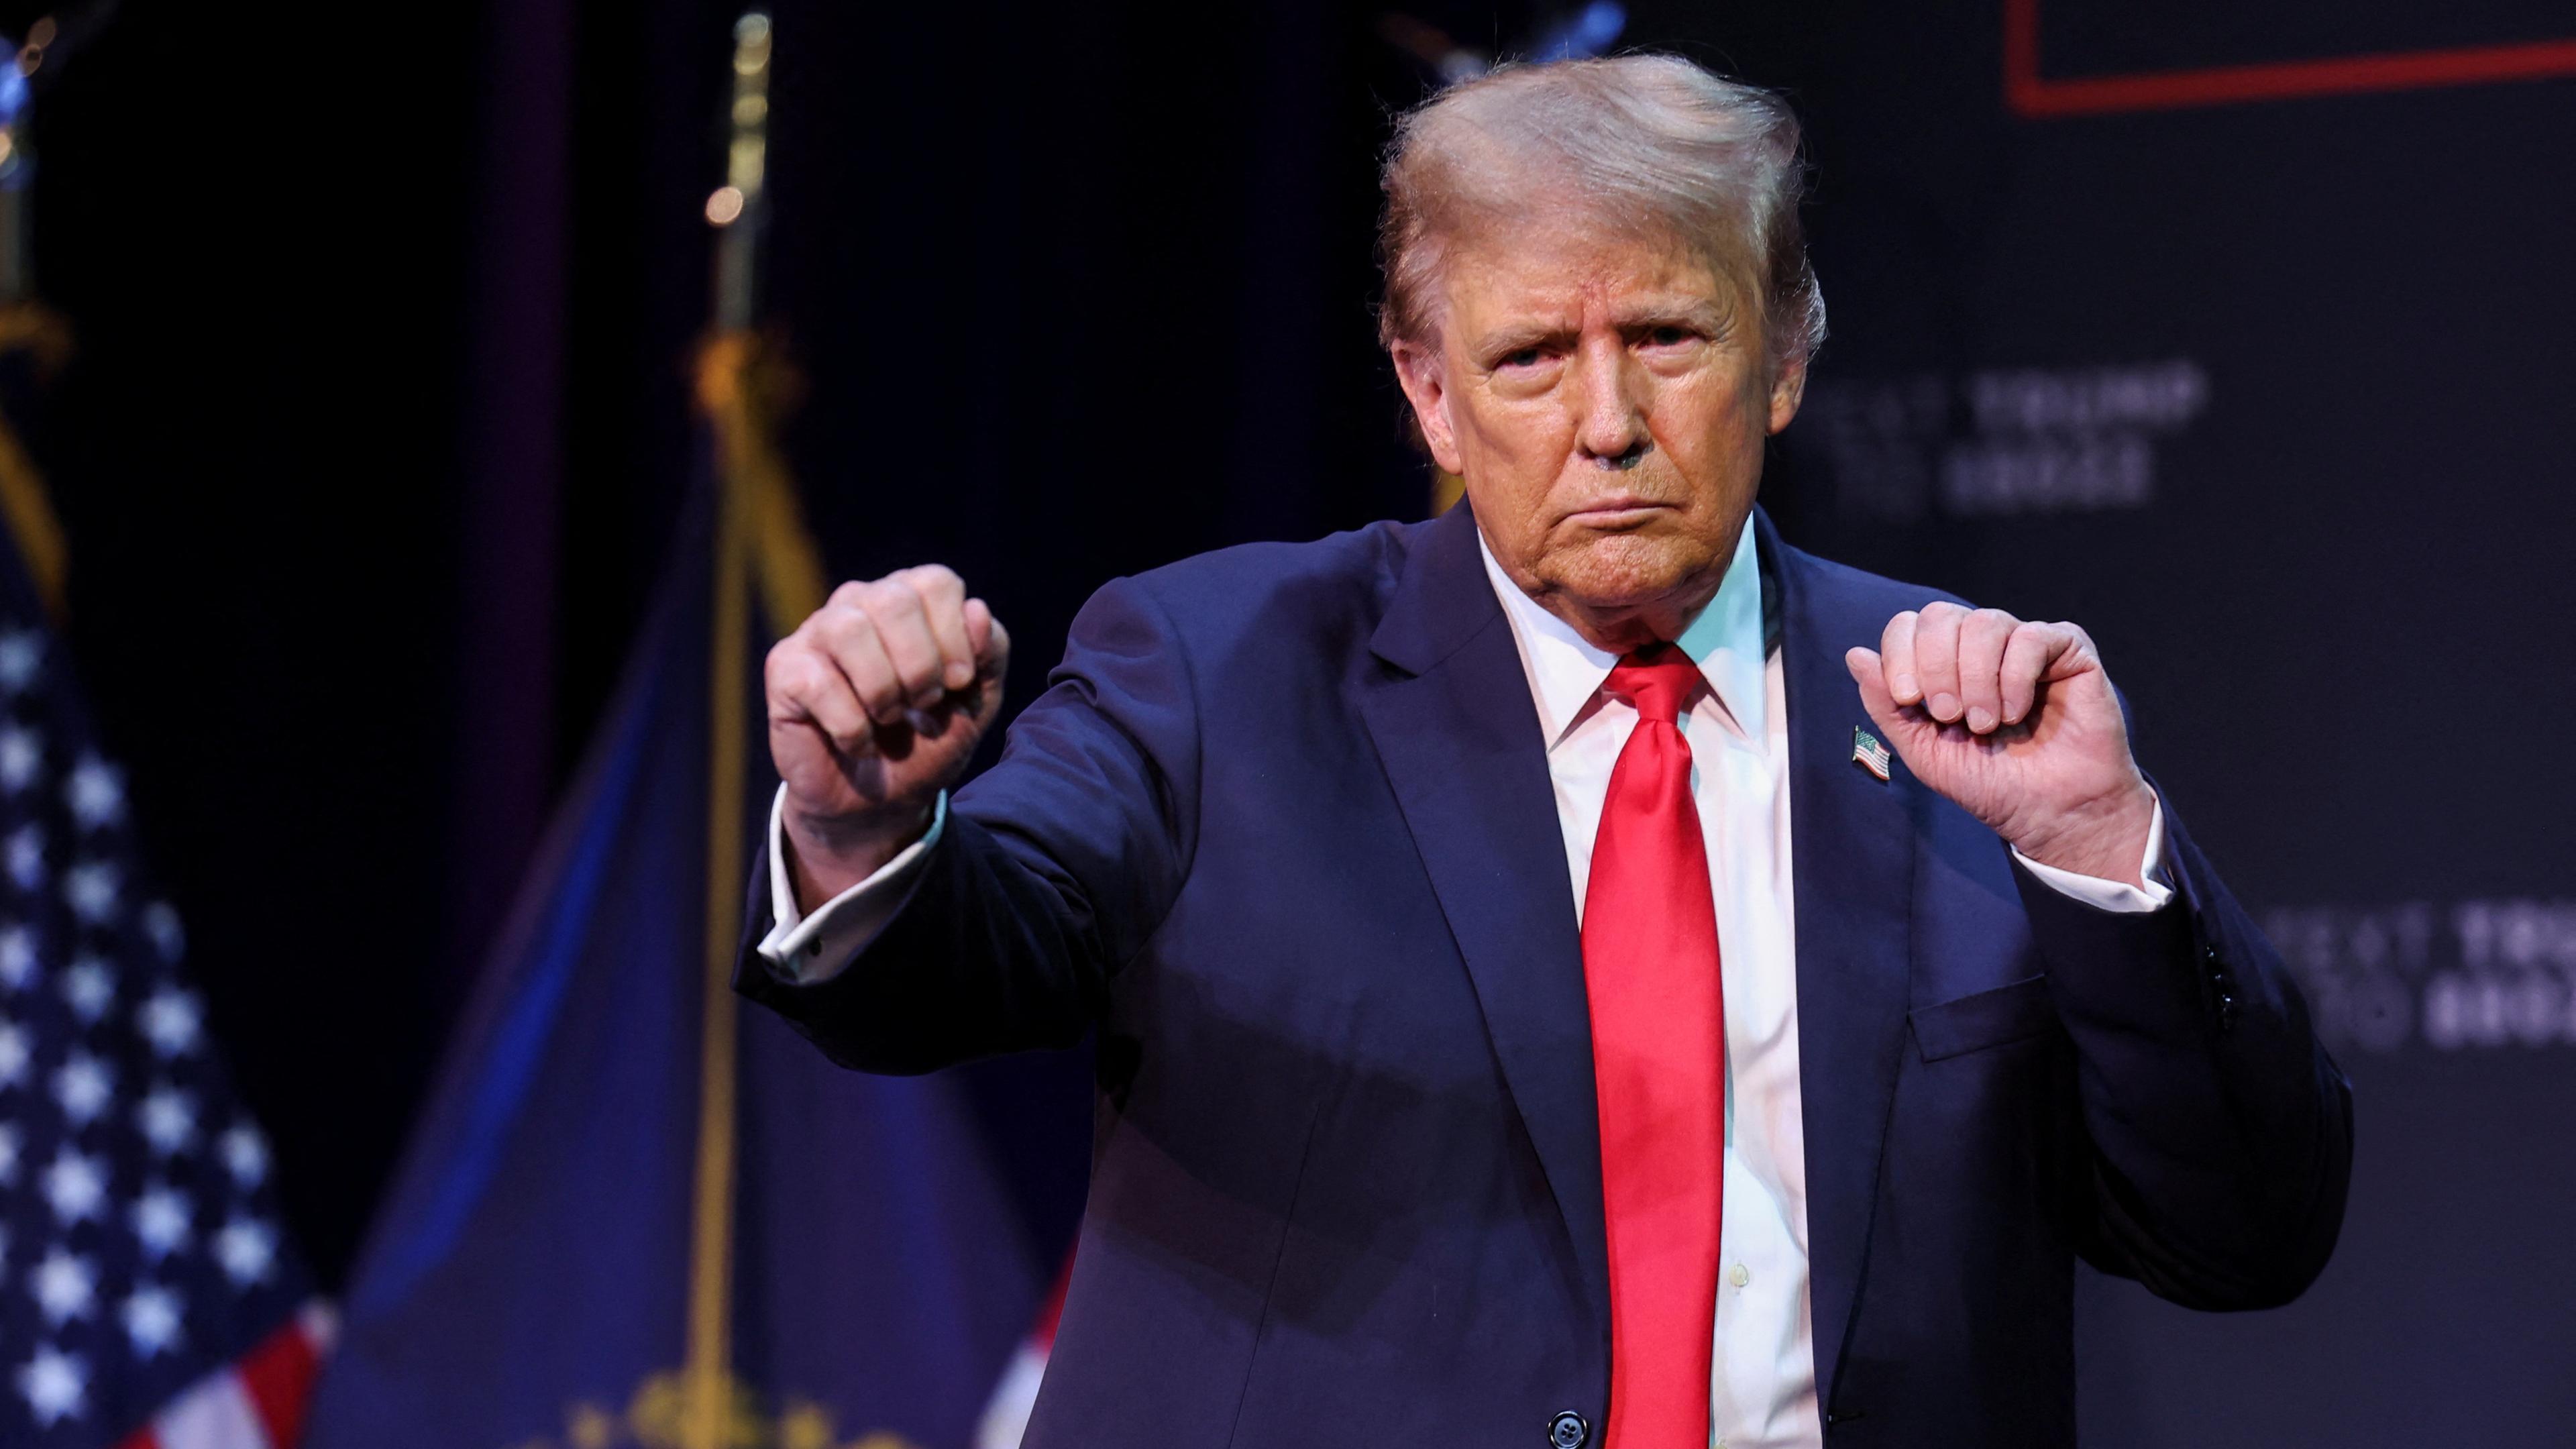 Der ehemalige US-President Trump tanzt mit den Händen zu Fäusten geballt auf einer Bühne, im Hintergrund sind US-Flaggen.